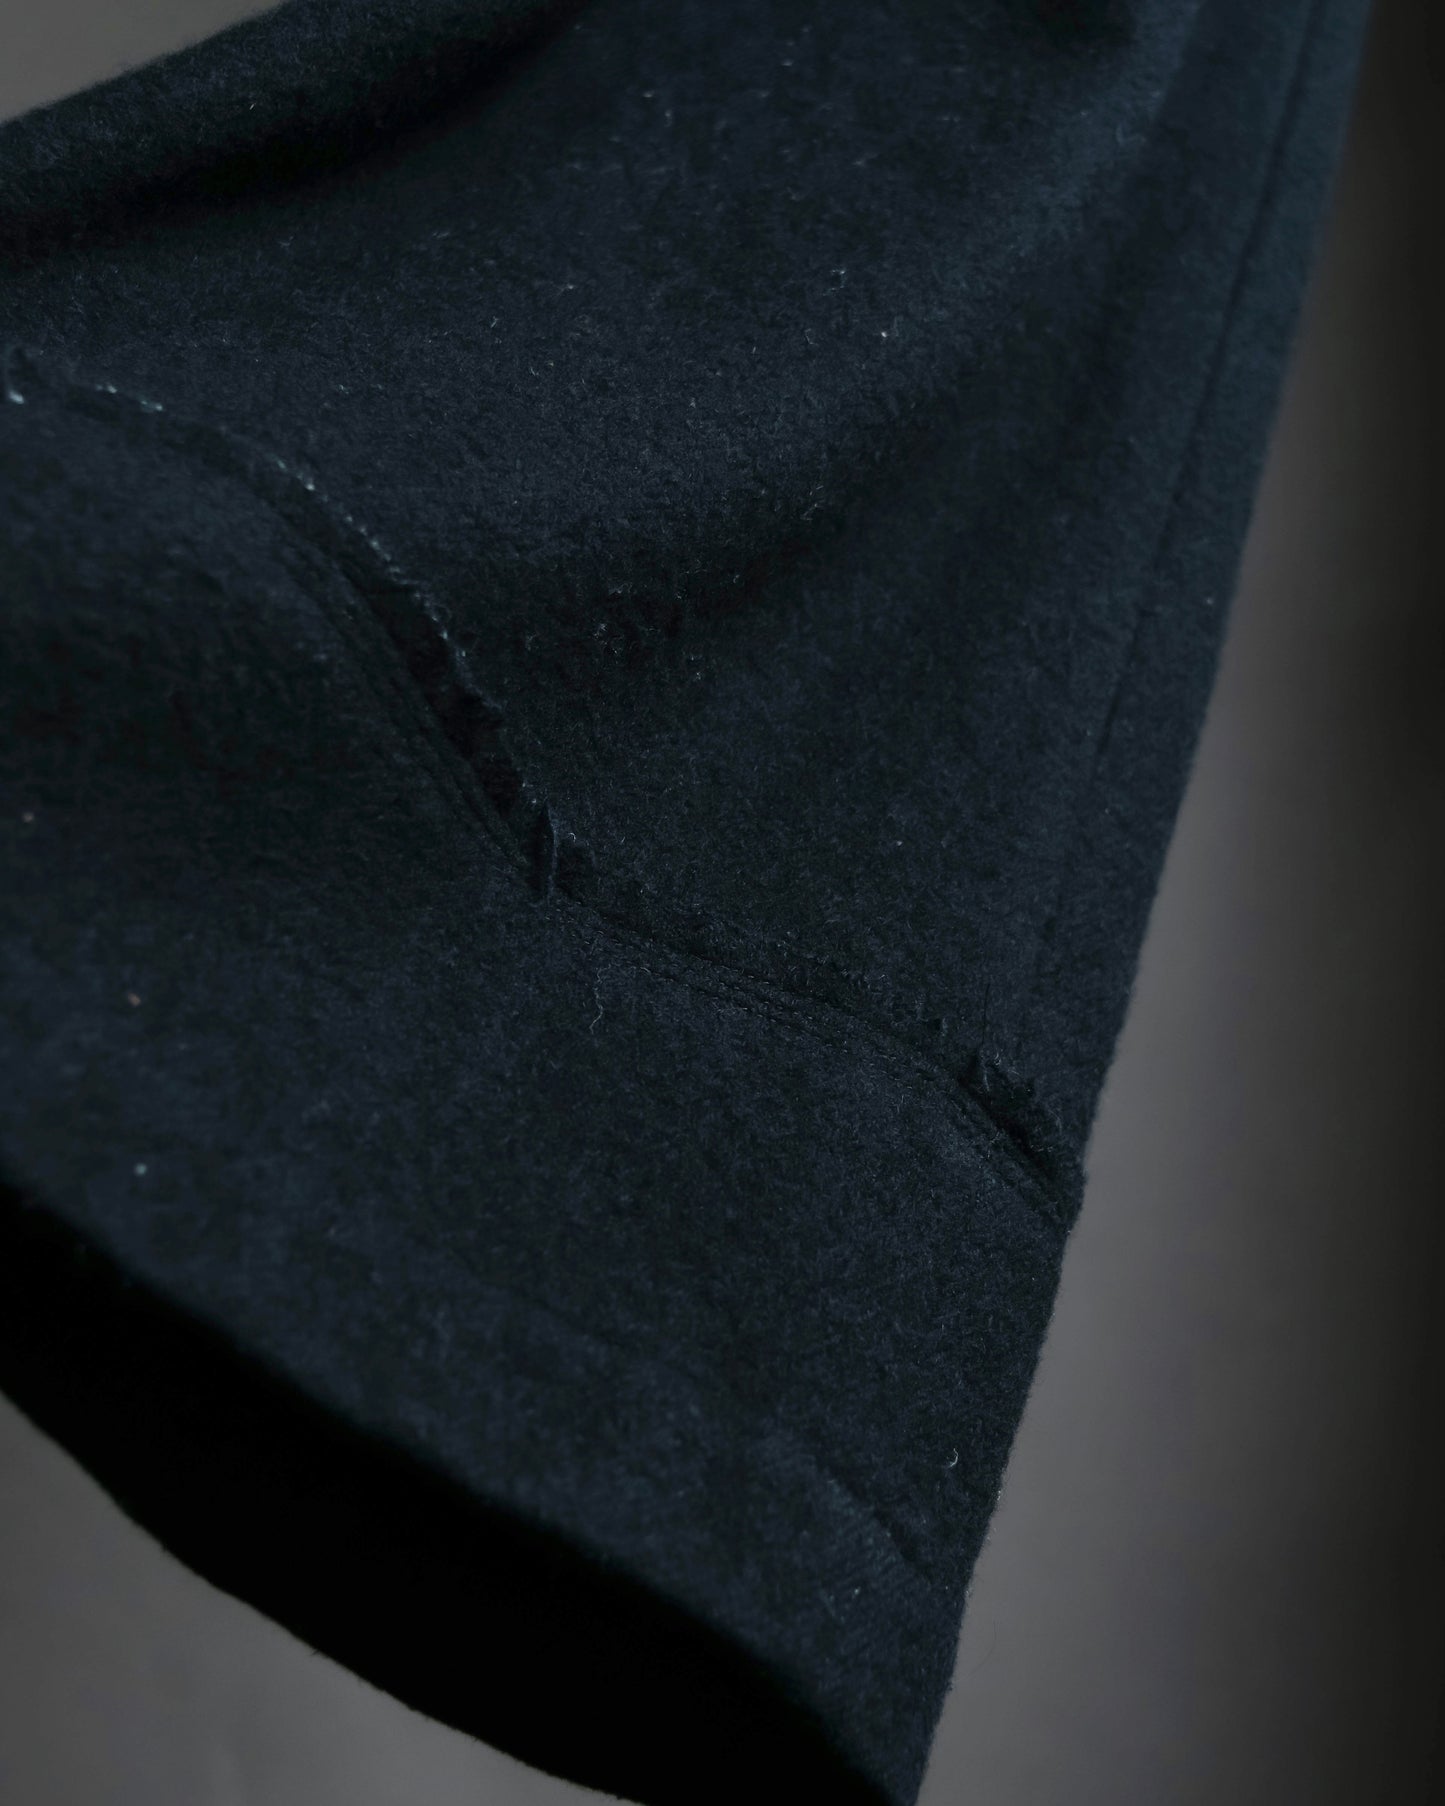 “tricot Comme des Garçons” beautiful silhouette wide slacks